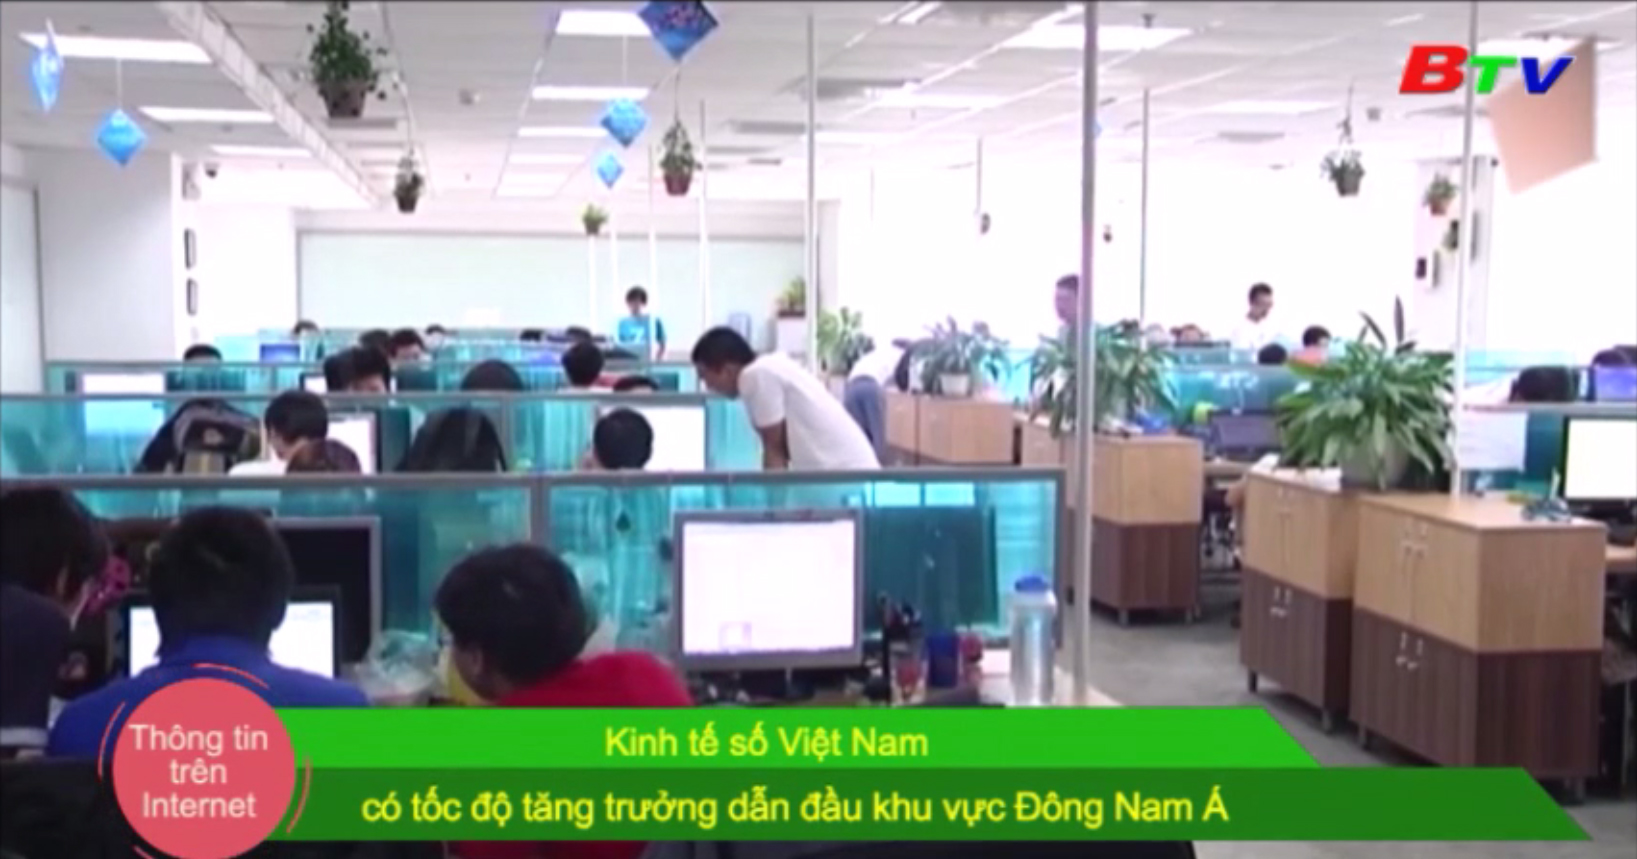 Kinh tế số Việt Nam có tốc độ tăng trưởng dẫn đầu khu vực Đông Nam Á